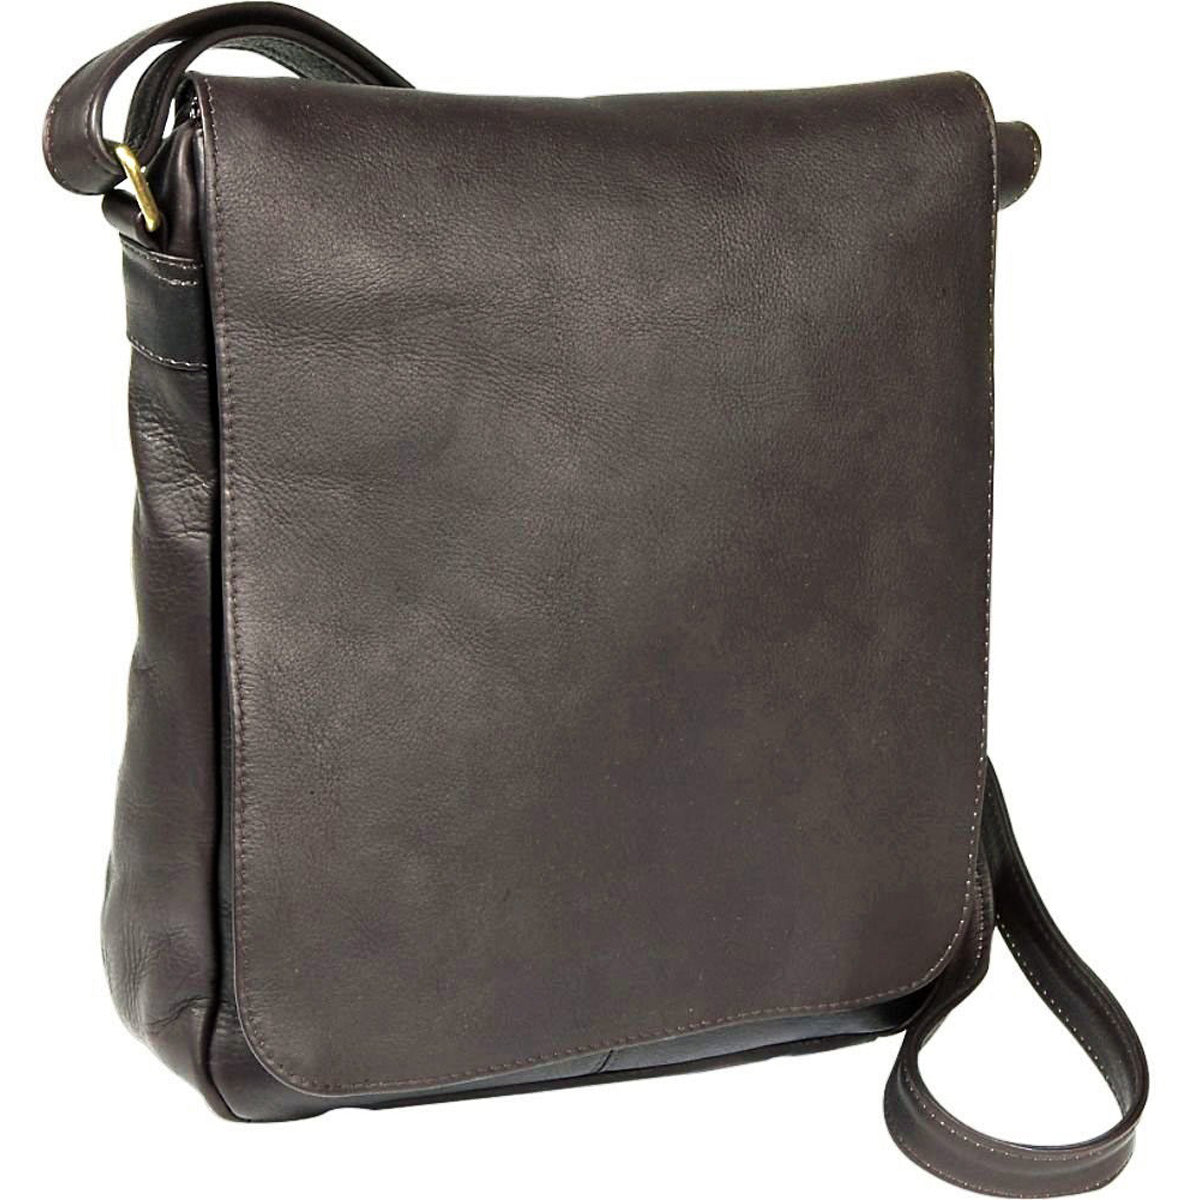 Le Donne Leather Flap Over Shoulder Bag (Tan)